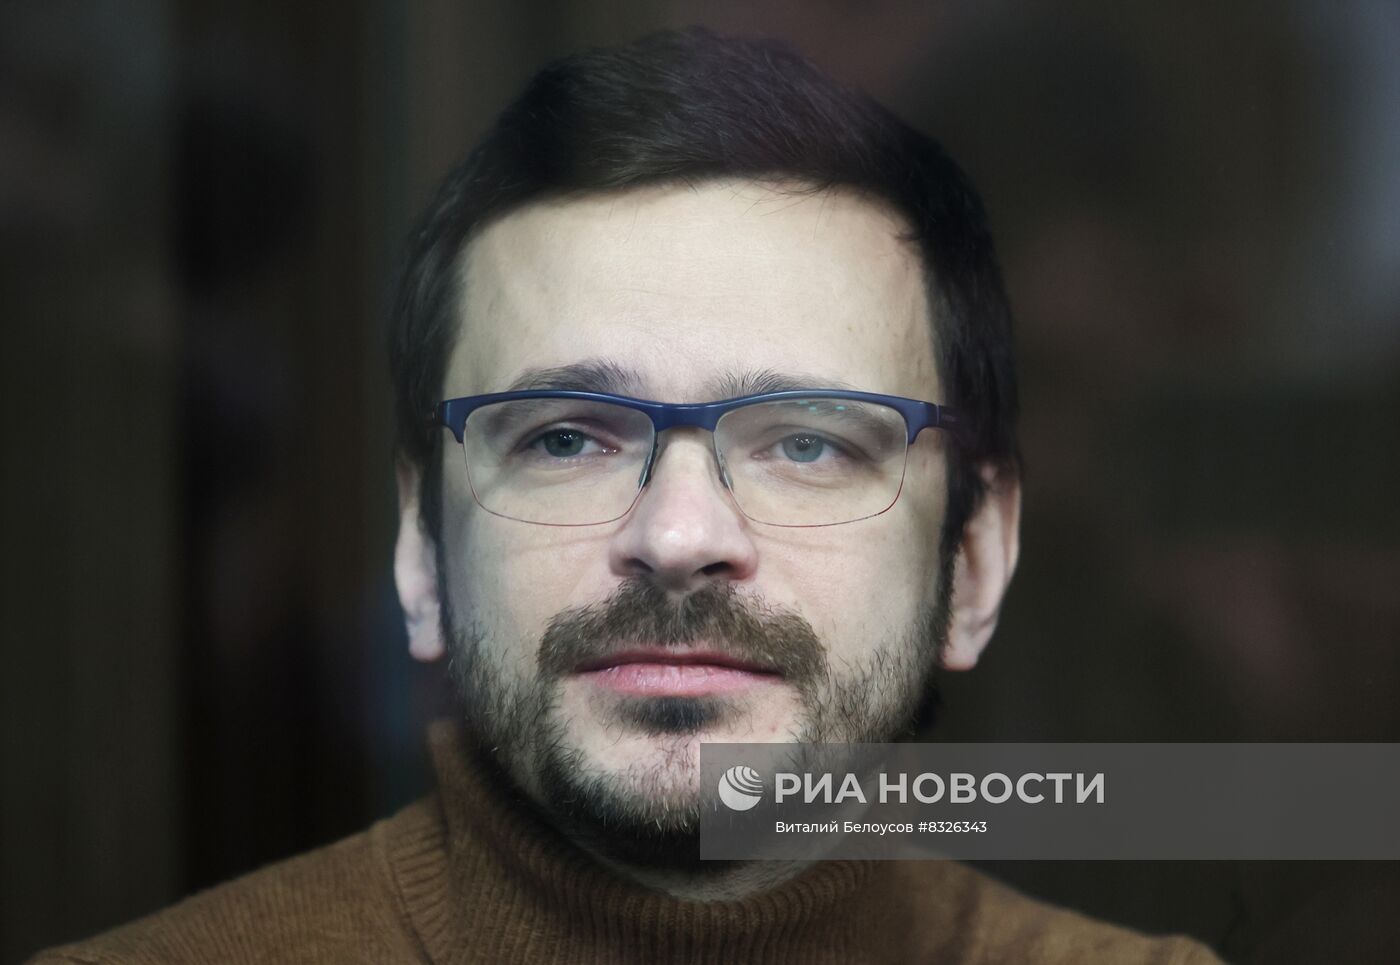 Заседание по существу дела И. Яшина, обвиняемого в распространении фейков про российскую армию